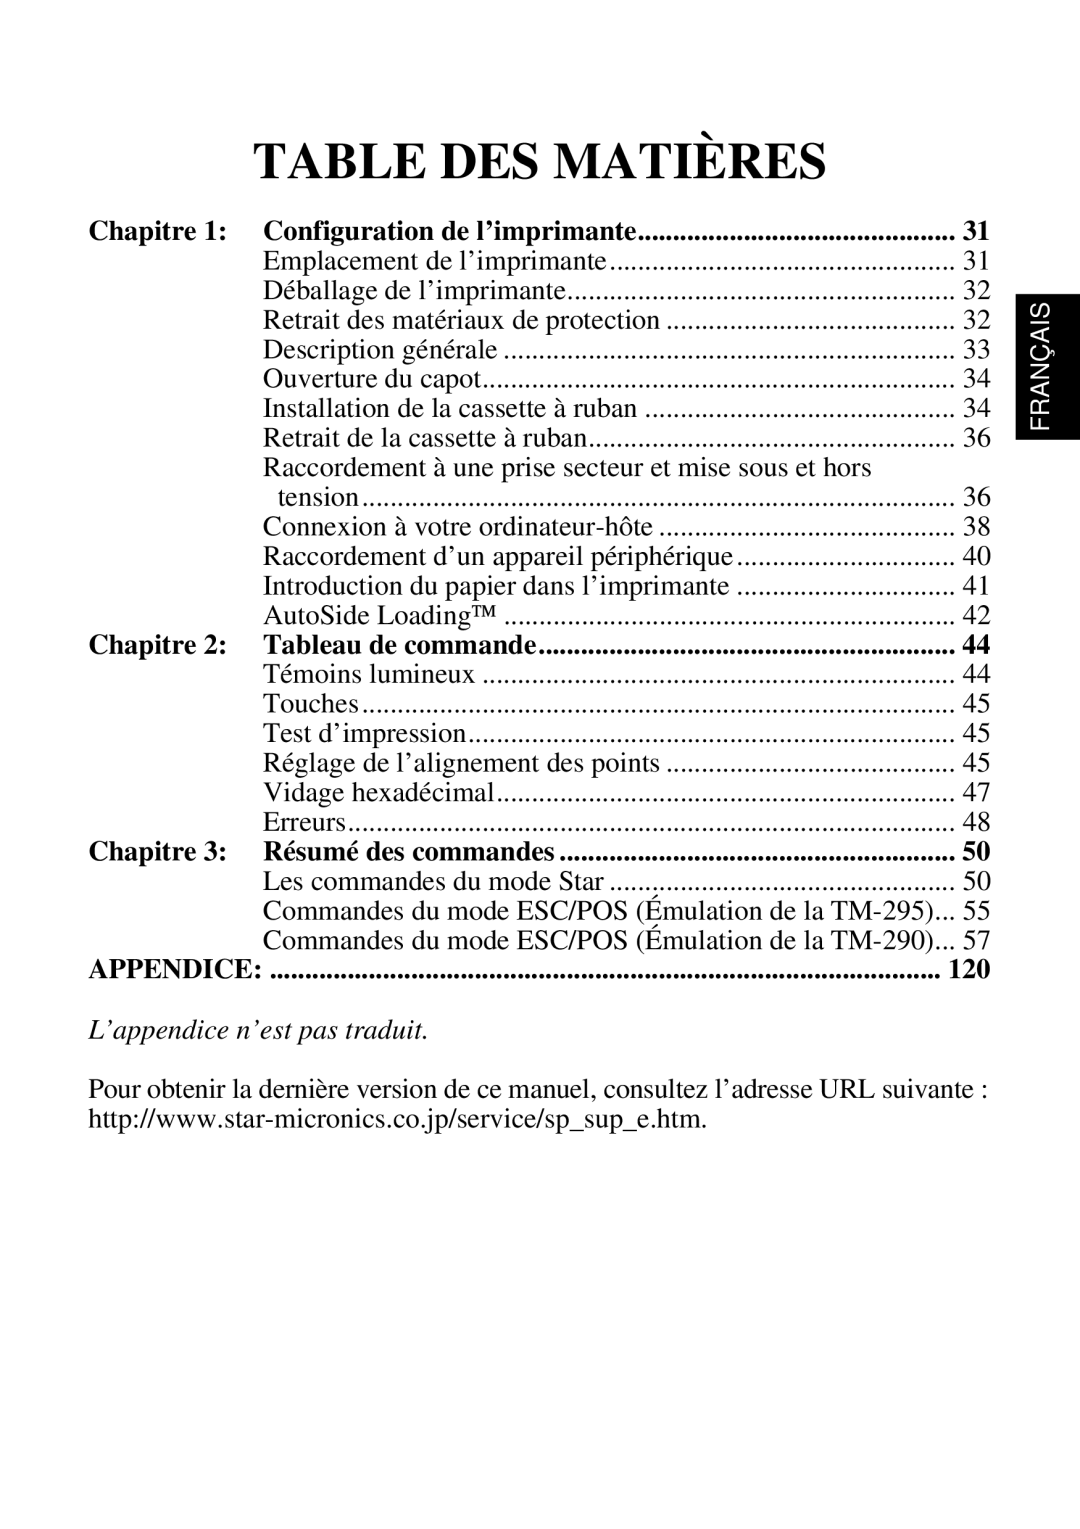 Star Micronics SP298 Table Des Matières, L’appendice n’est pas traduit, Chapitre 1 Configuration de l’imprimante, Français 